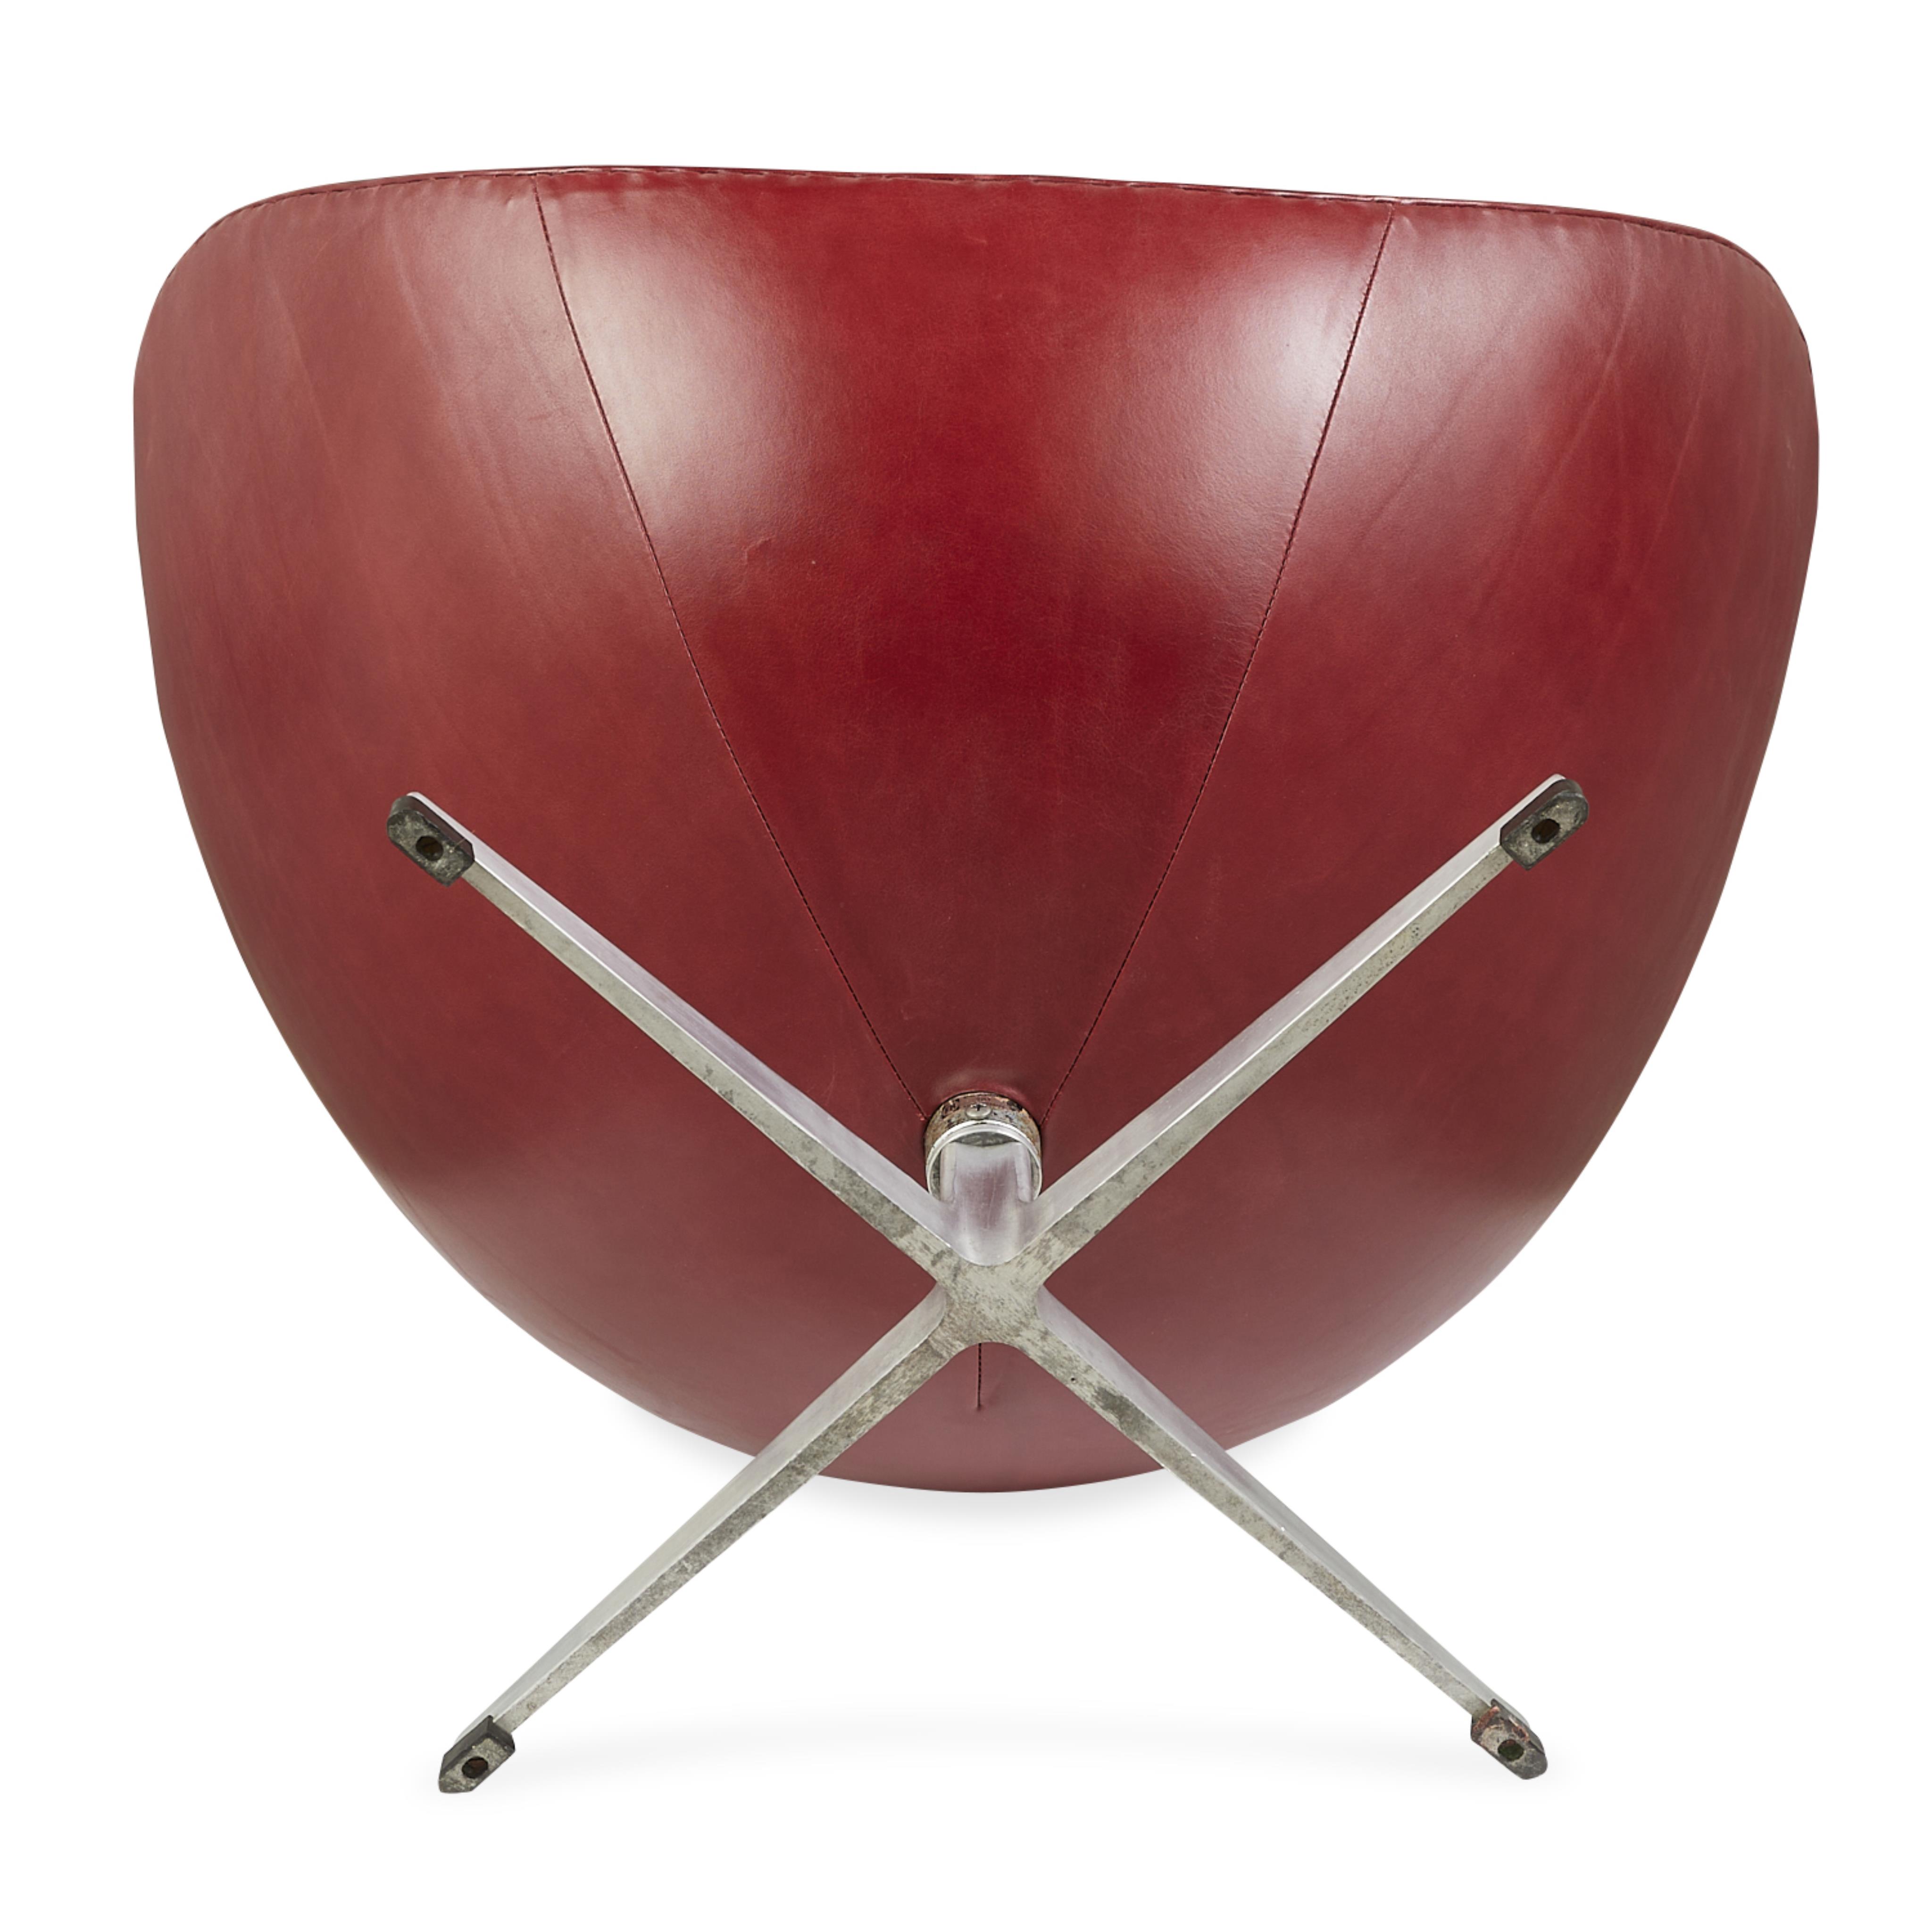 Arne Jacobsen for Hansen Leather Egg Chair 1964 - Image 11 of 17